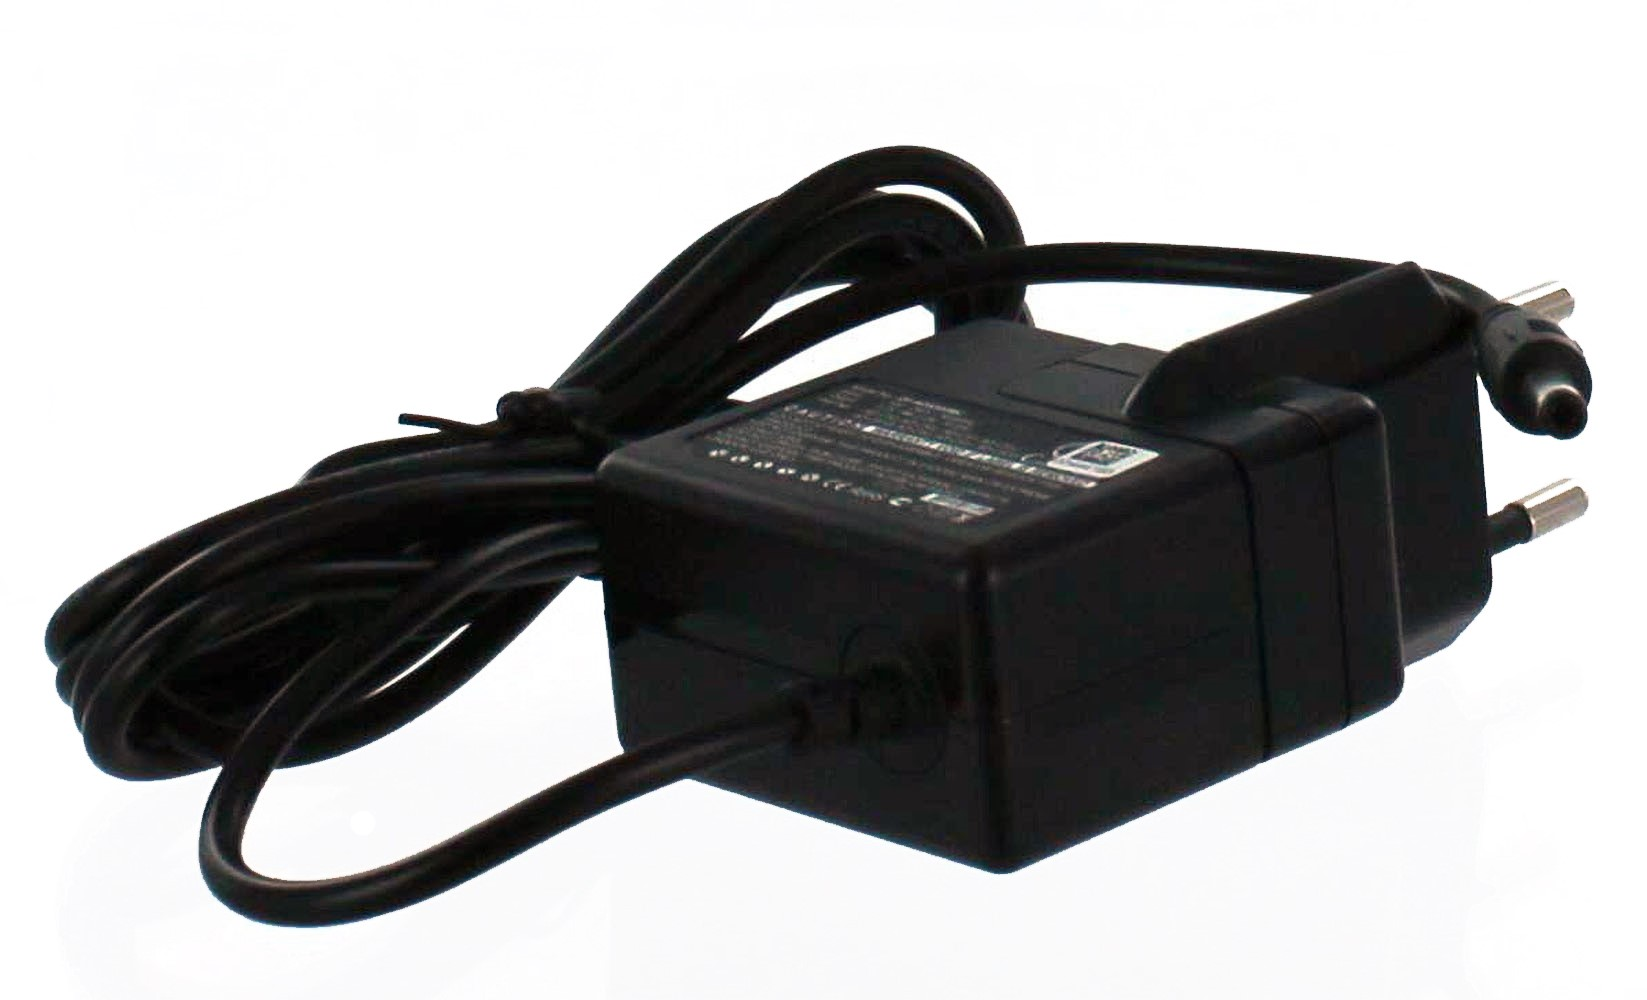 MOBILOTEC Netzteil kompatibel mit Casio Volt, Netzteil/Ladegerät 5.3 Casio, EX-Z850 Exilim schwarz